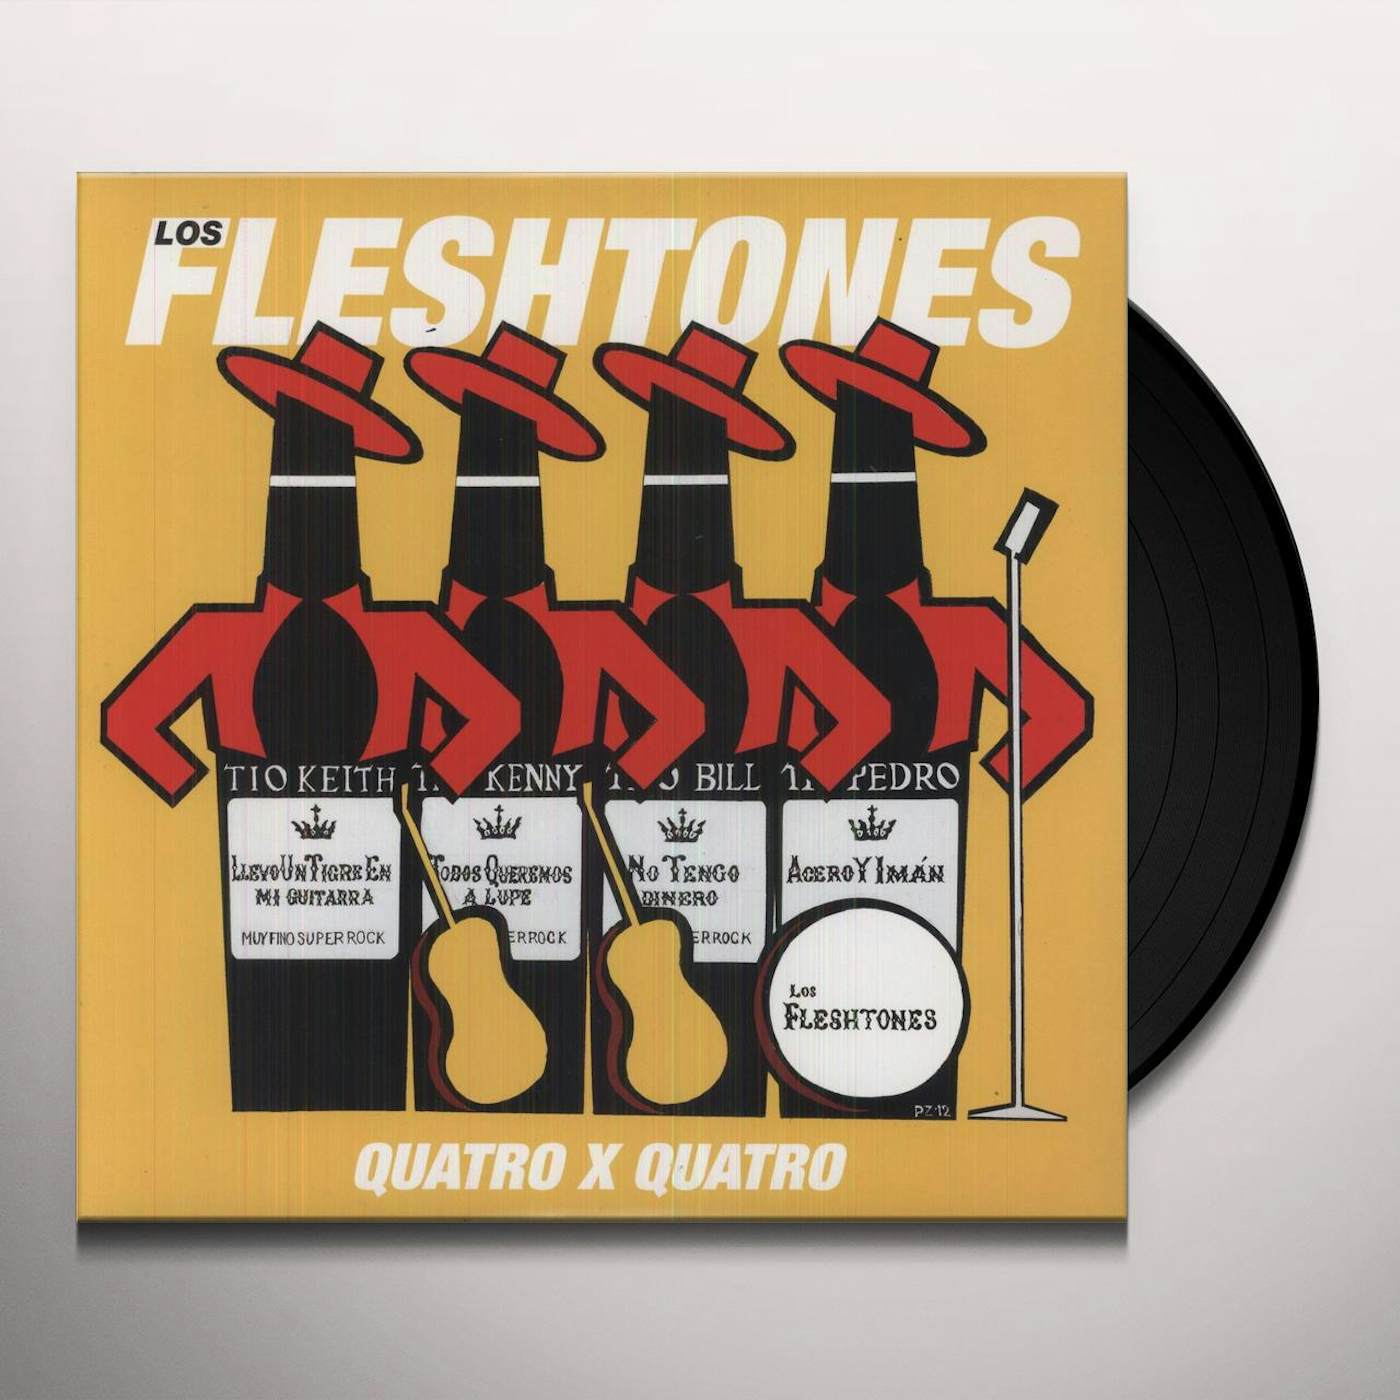 The Fleshtones Quatro x Quatro Vinyl Record